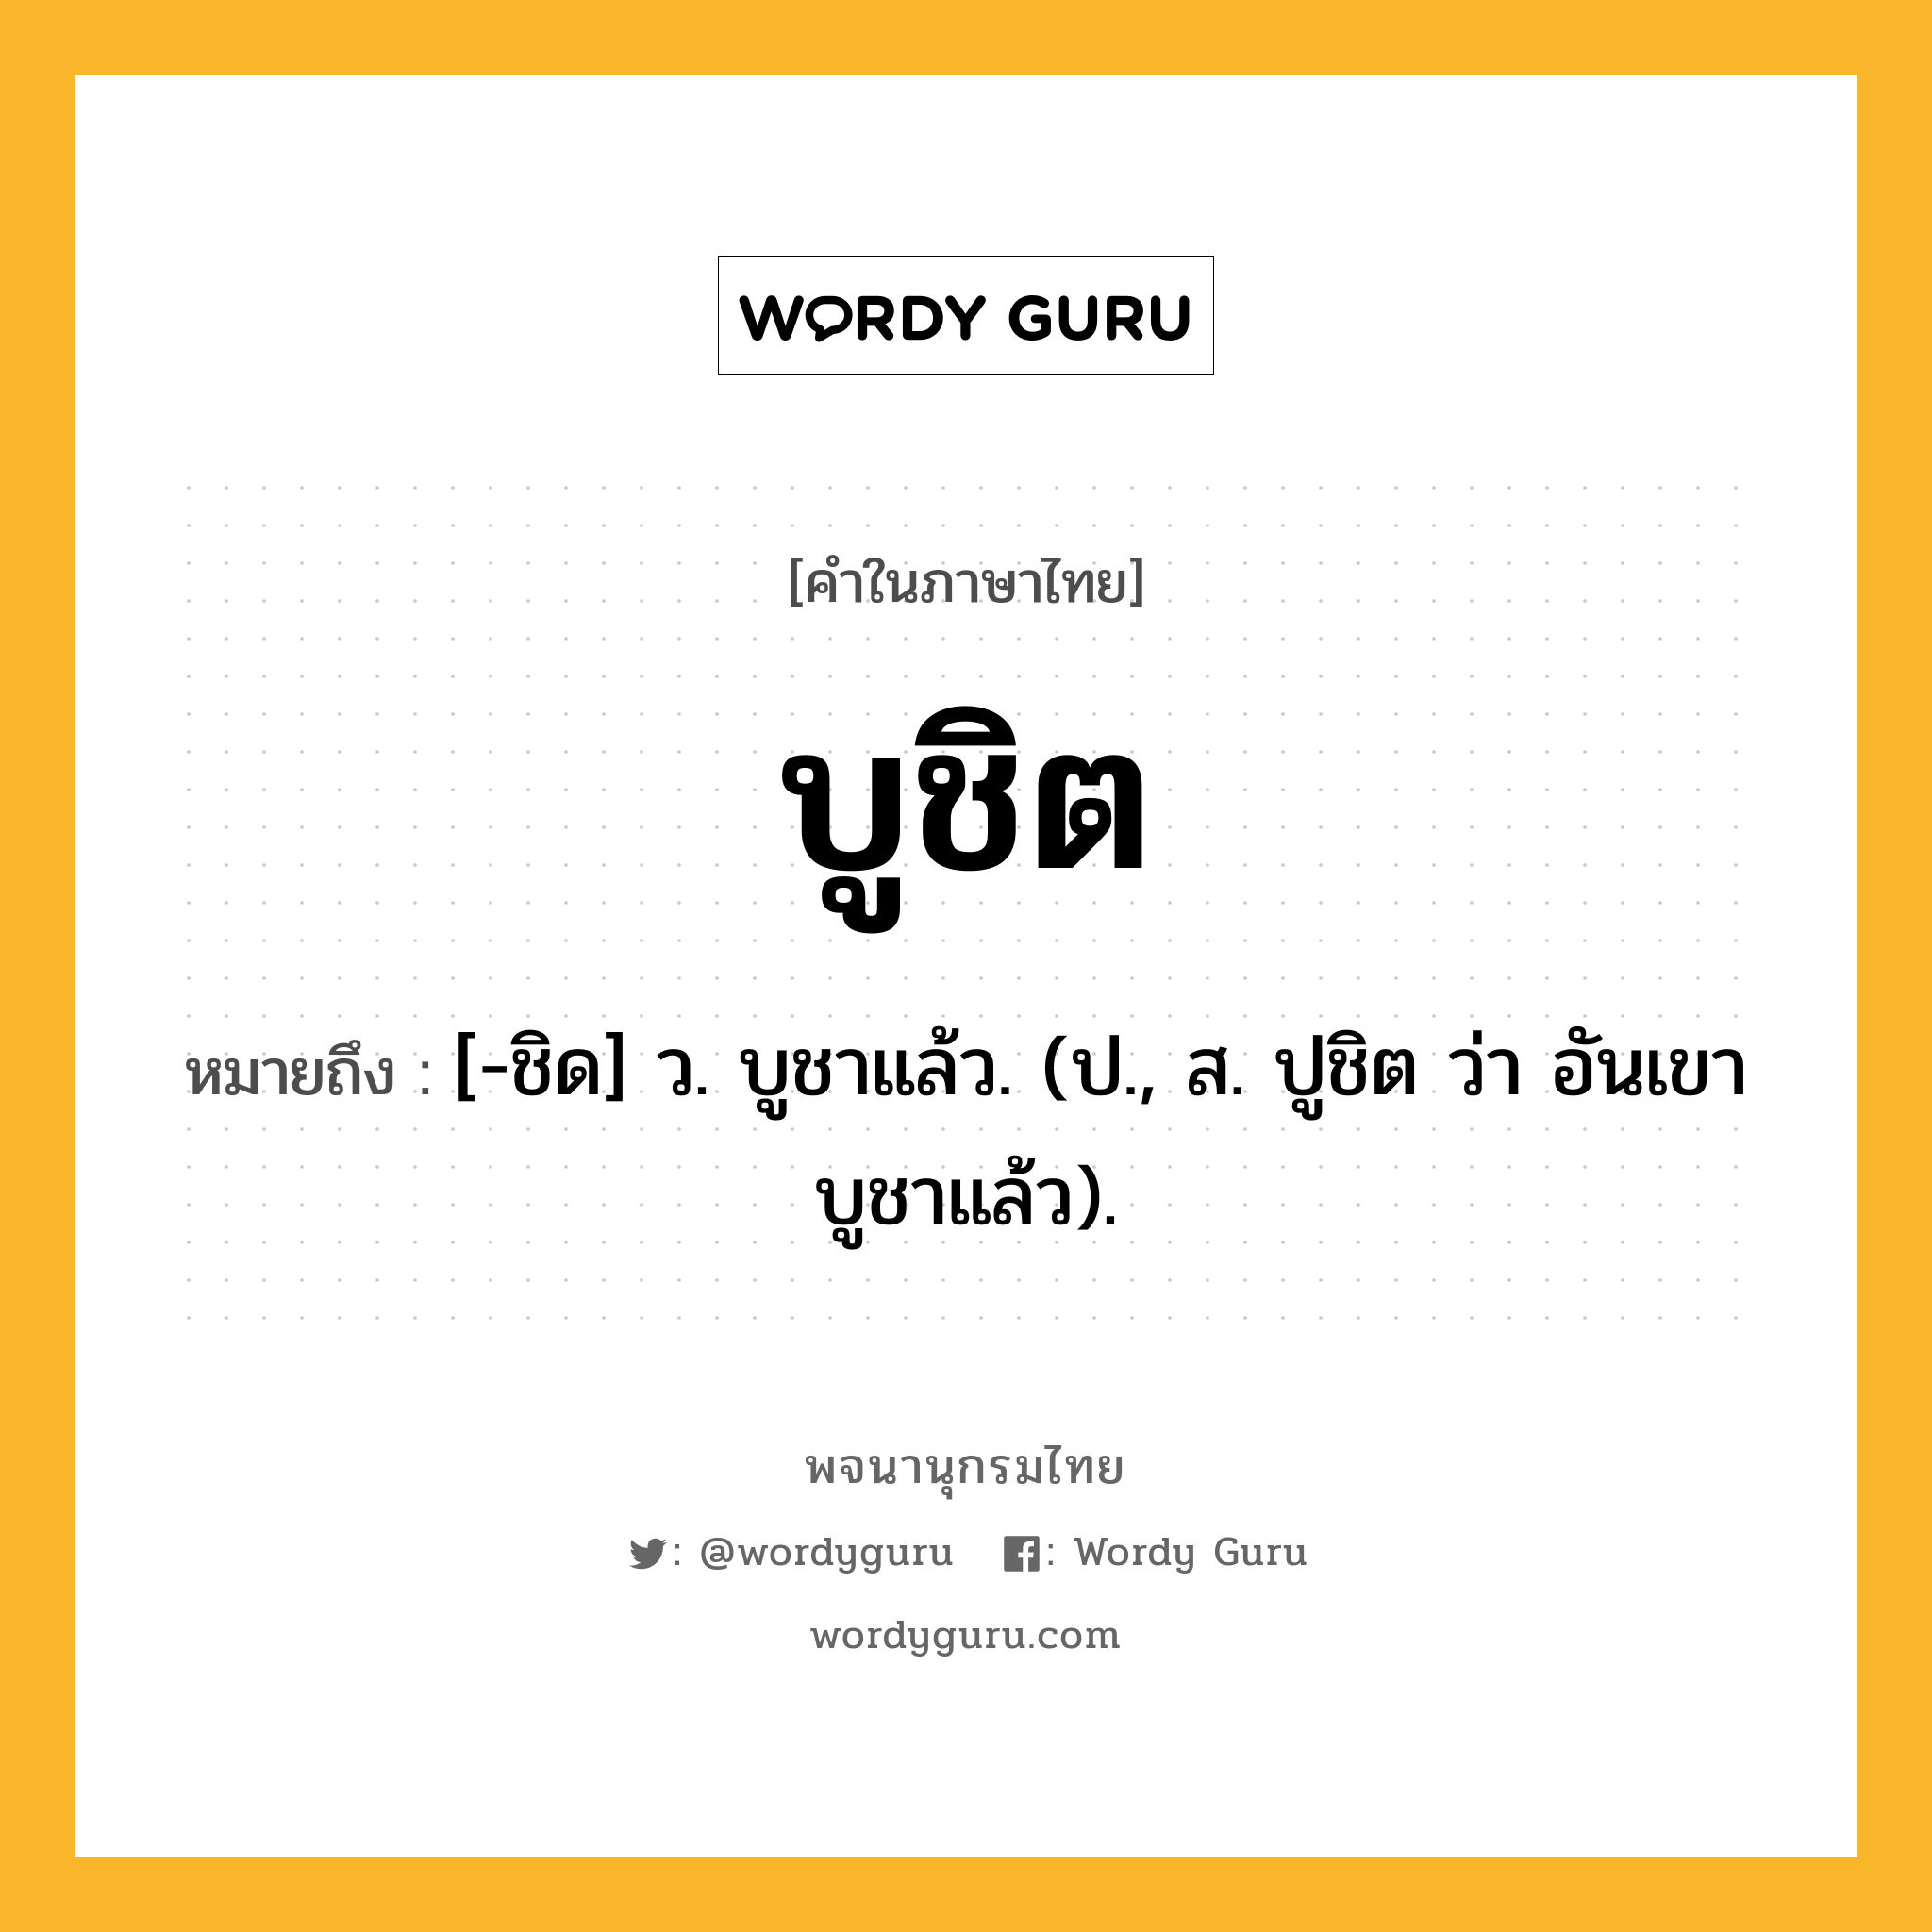 บูชิต ความหมาย หมายถึงอะไร?, คำในภาษาไทย บูชิต หมายถึง [-ชิด] ว. บูชาแล้ว. (ป., ส. ปูชิต ว่า อันเขาบูชาแล้ว).